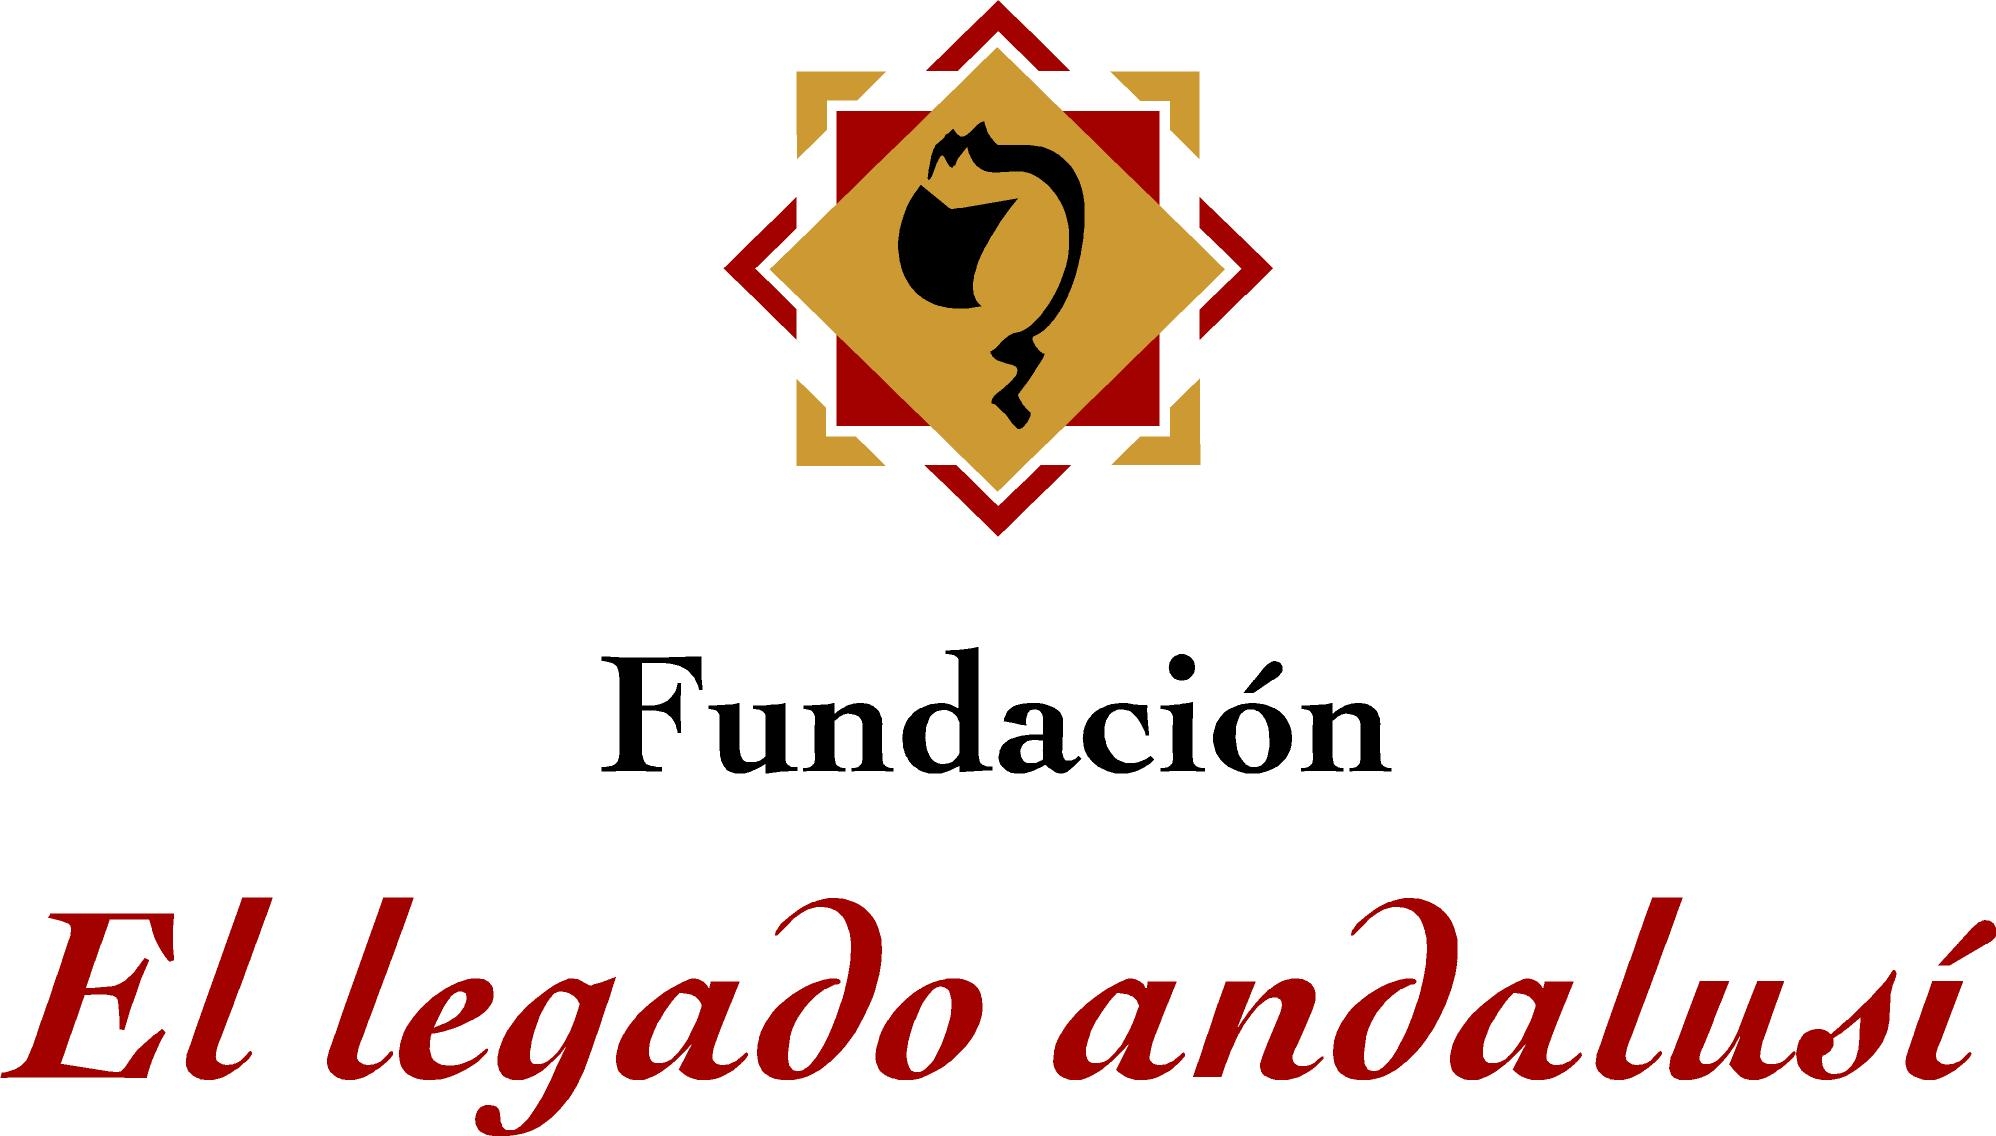 Fundacíon Pública Andaluza “Las Rutas de El legado andalusí”